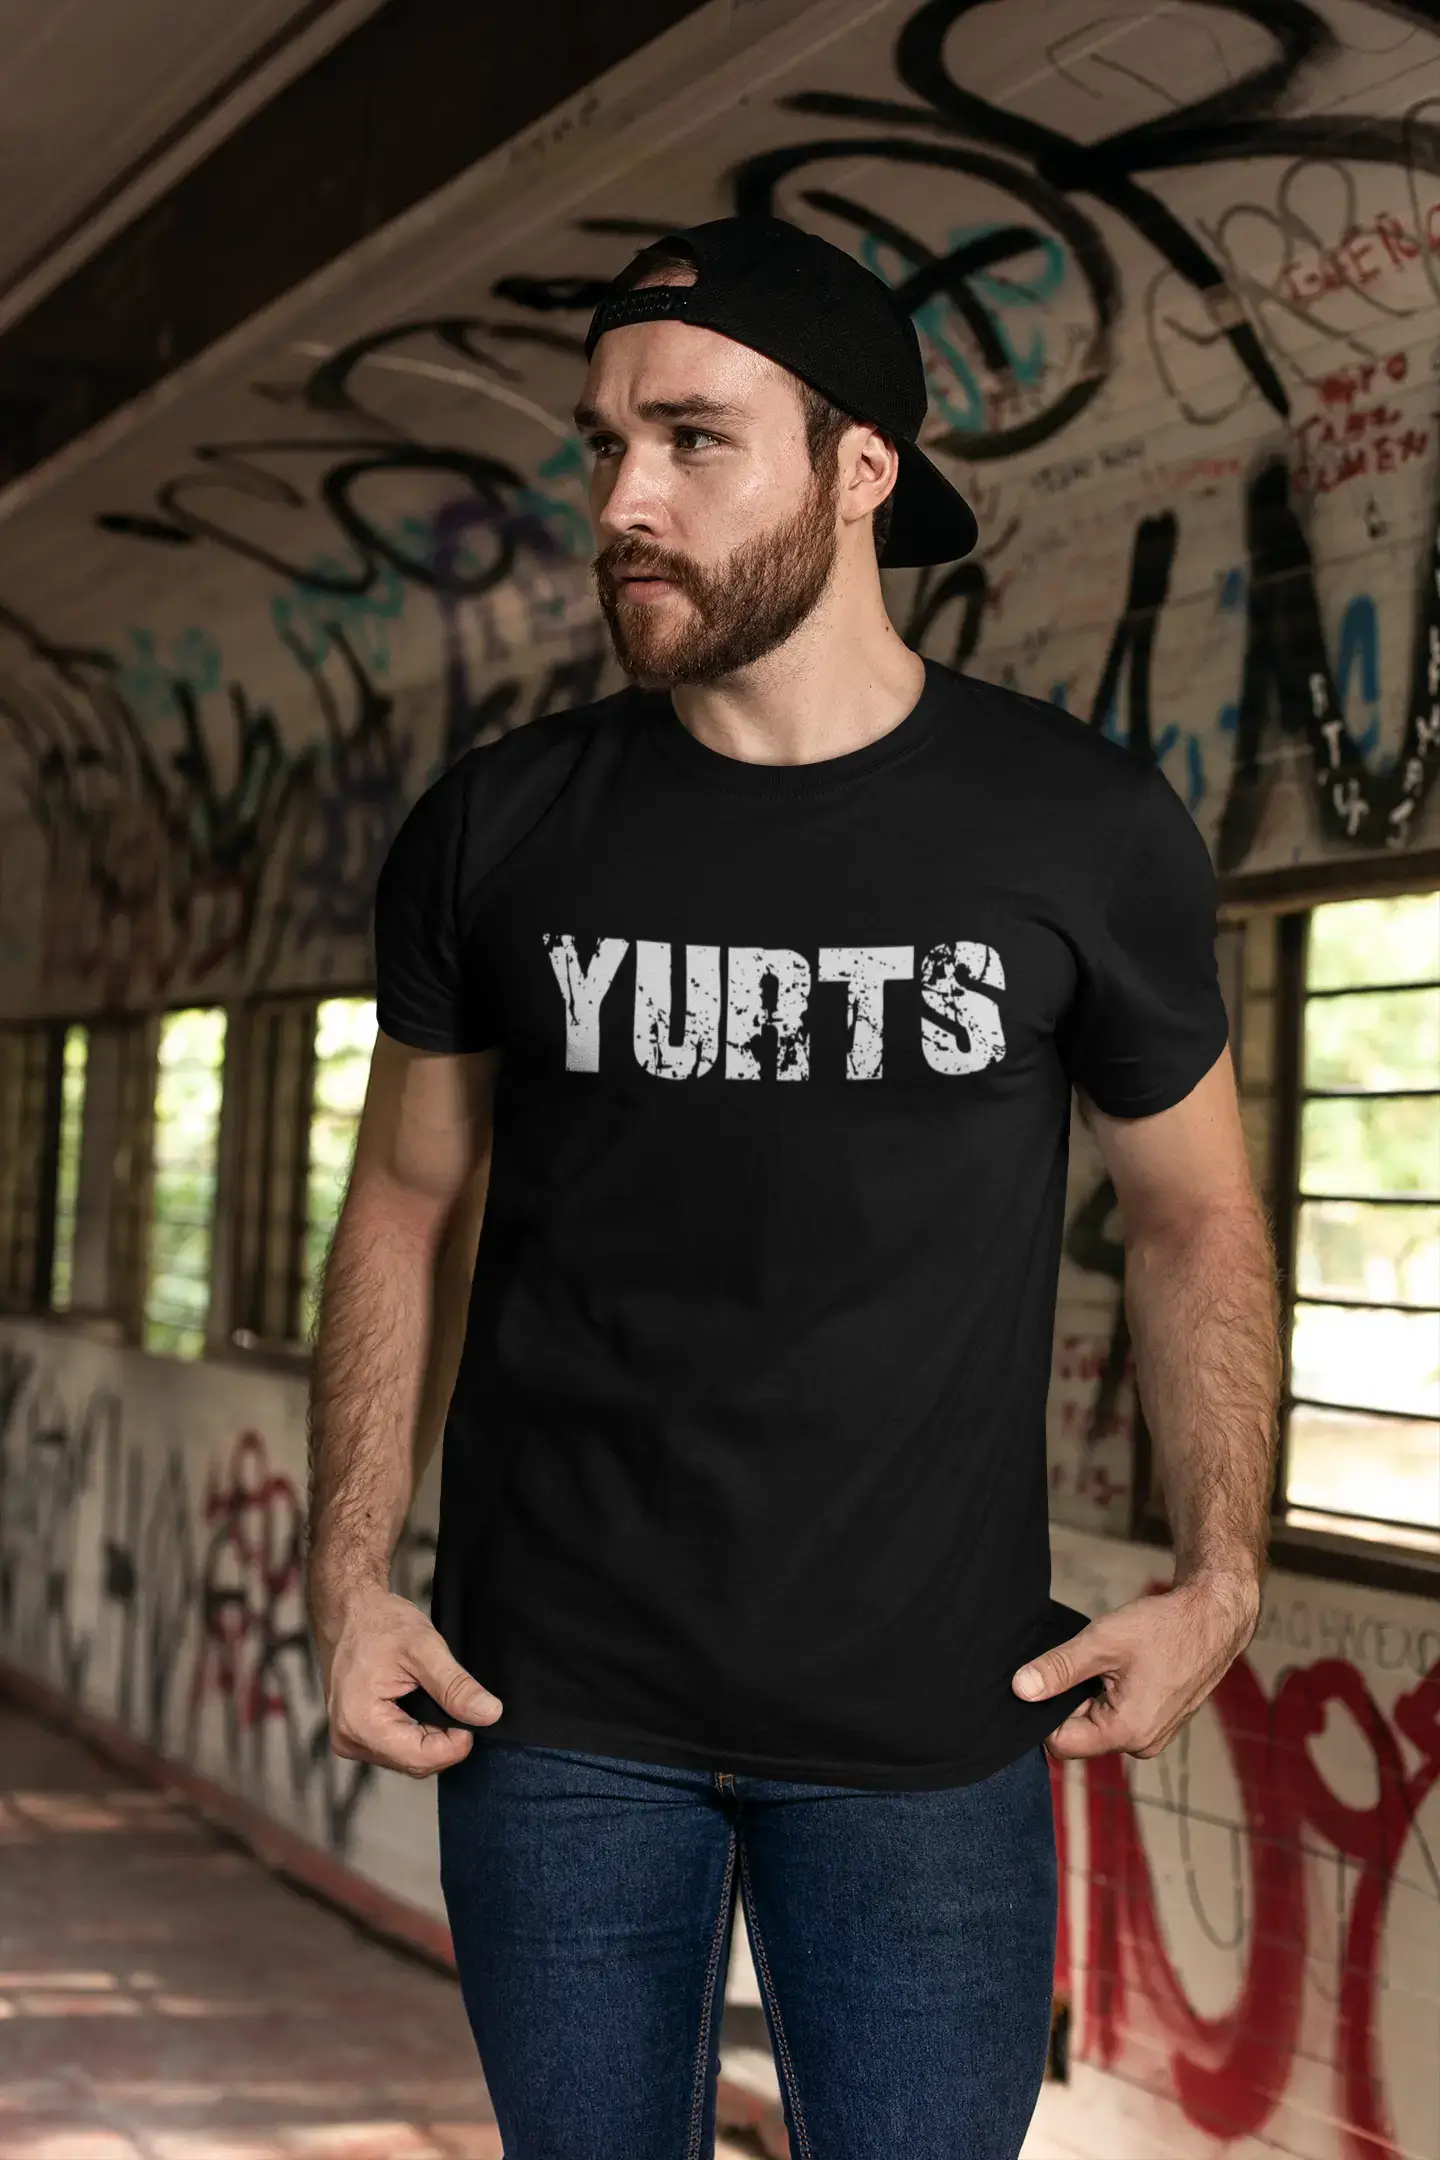 yurts Men's Retro T shirt Black Birthday Gift 00553